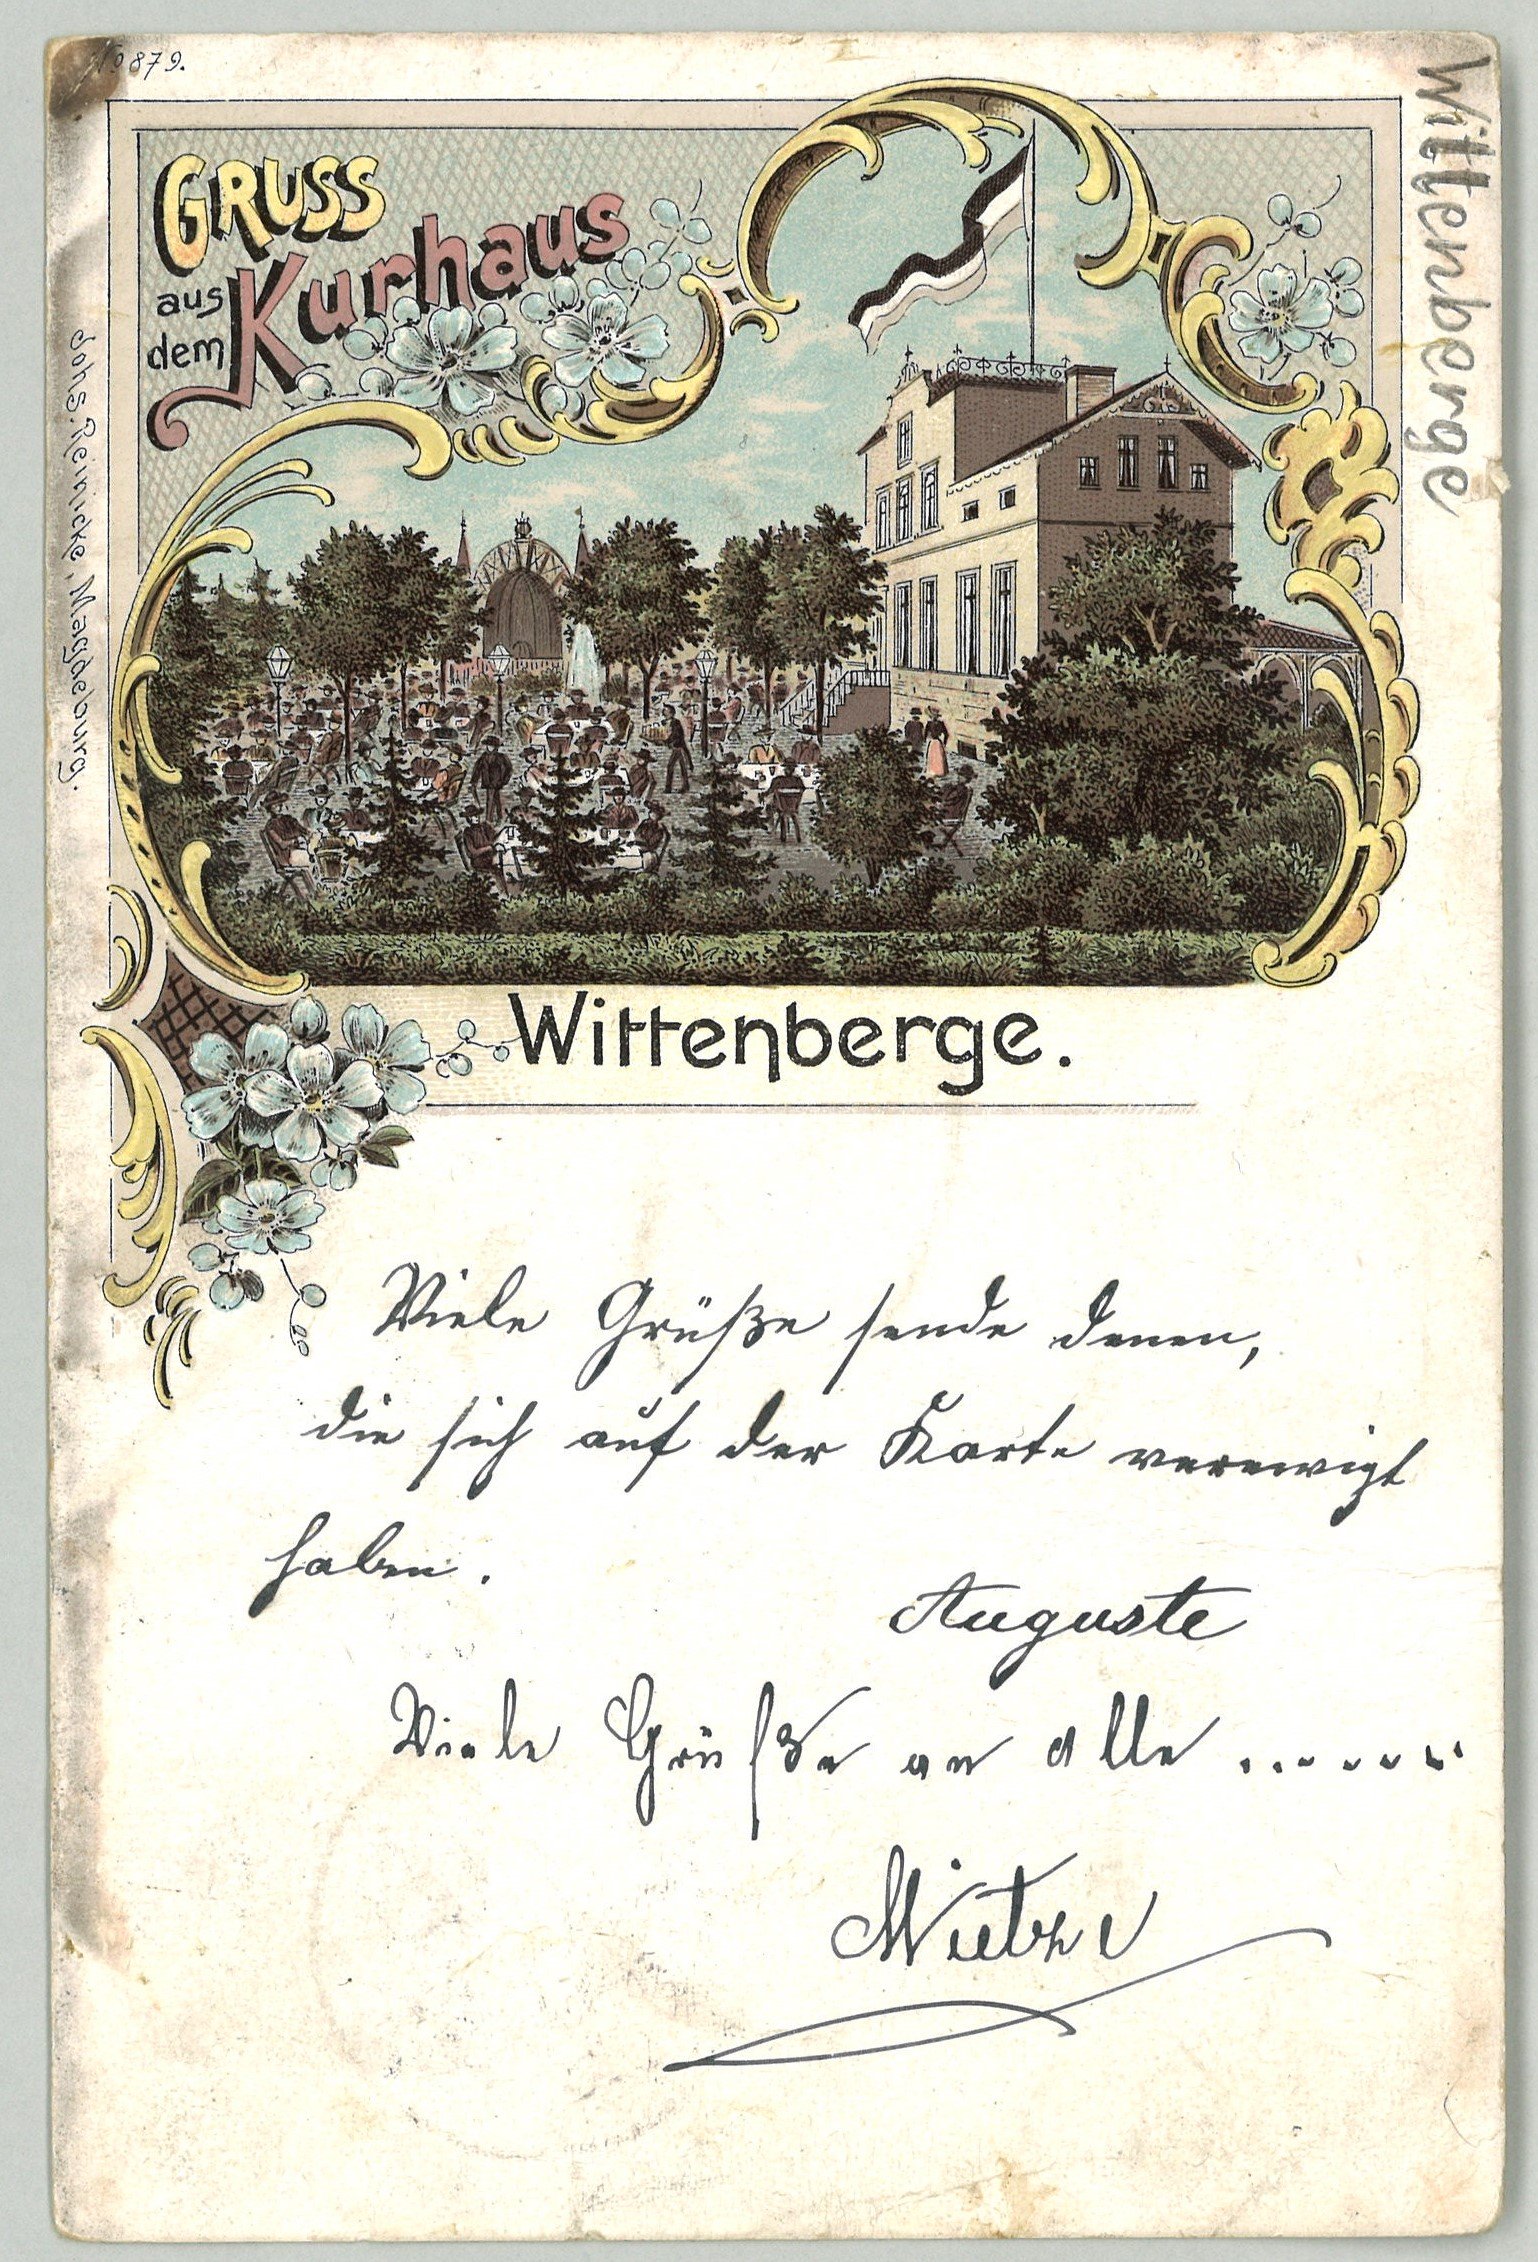 Wittenberge: Kurhaus (Landesgeschichtliche Vereinigung für die Mark Brandenburg e.V., Archiv CC BY)